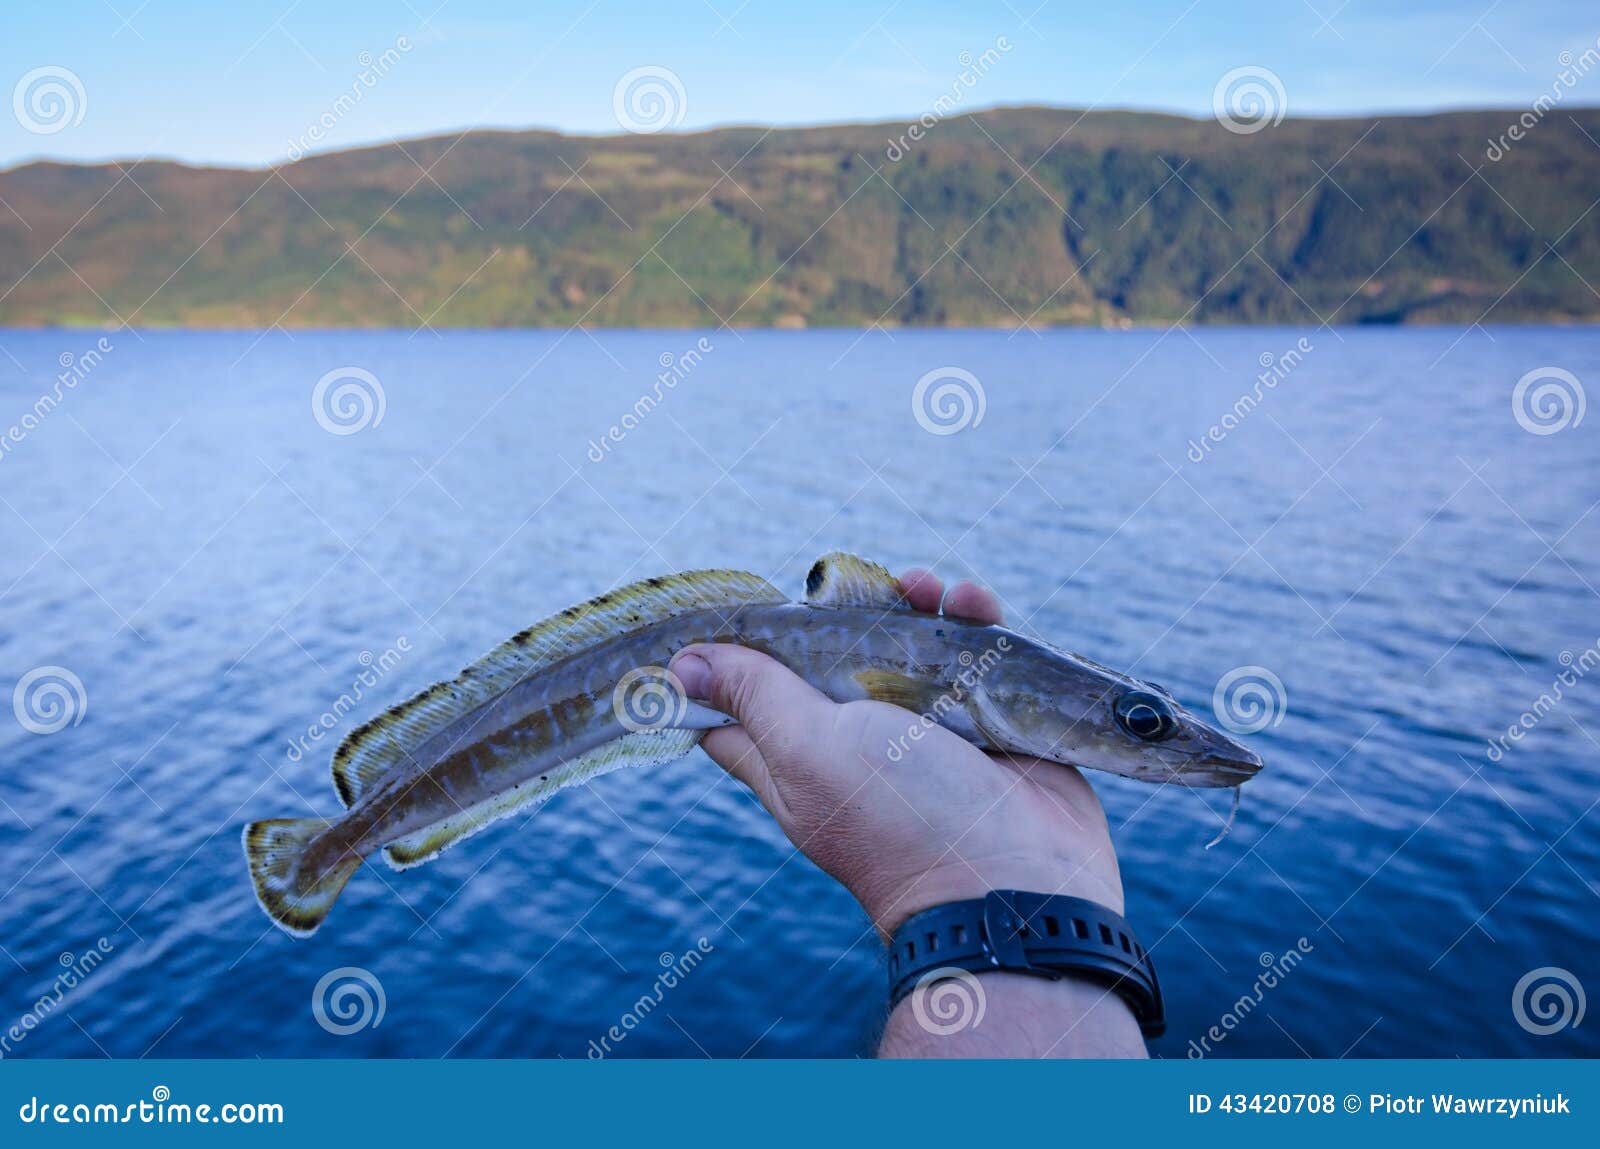 lake ling fish